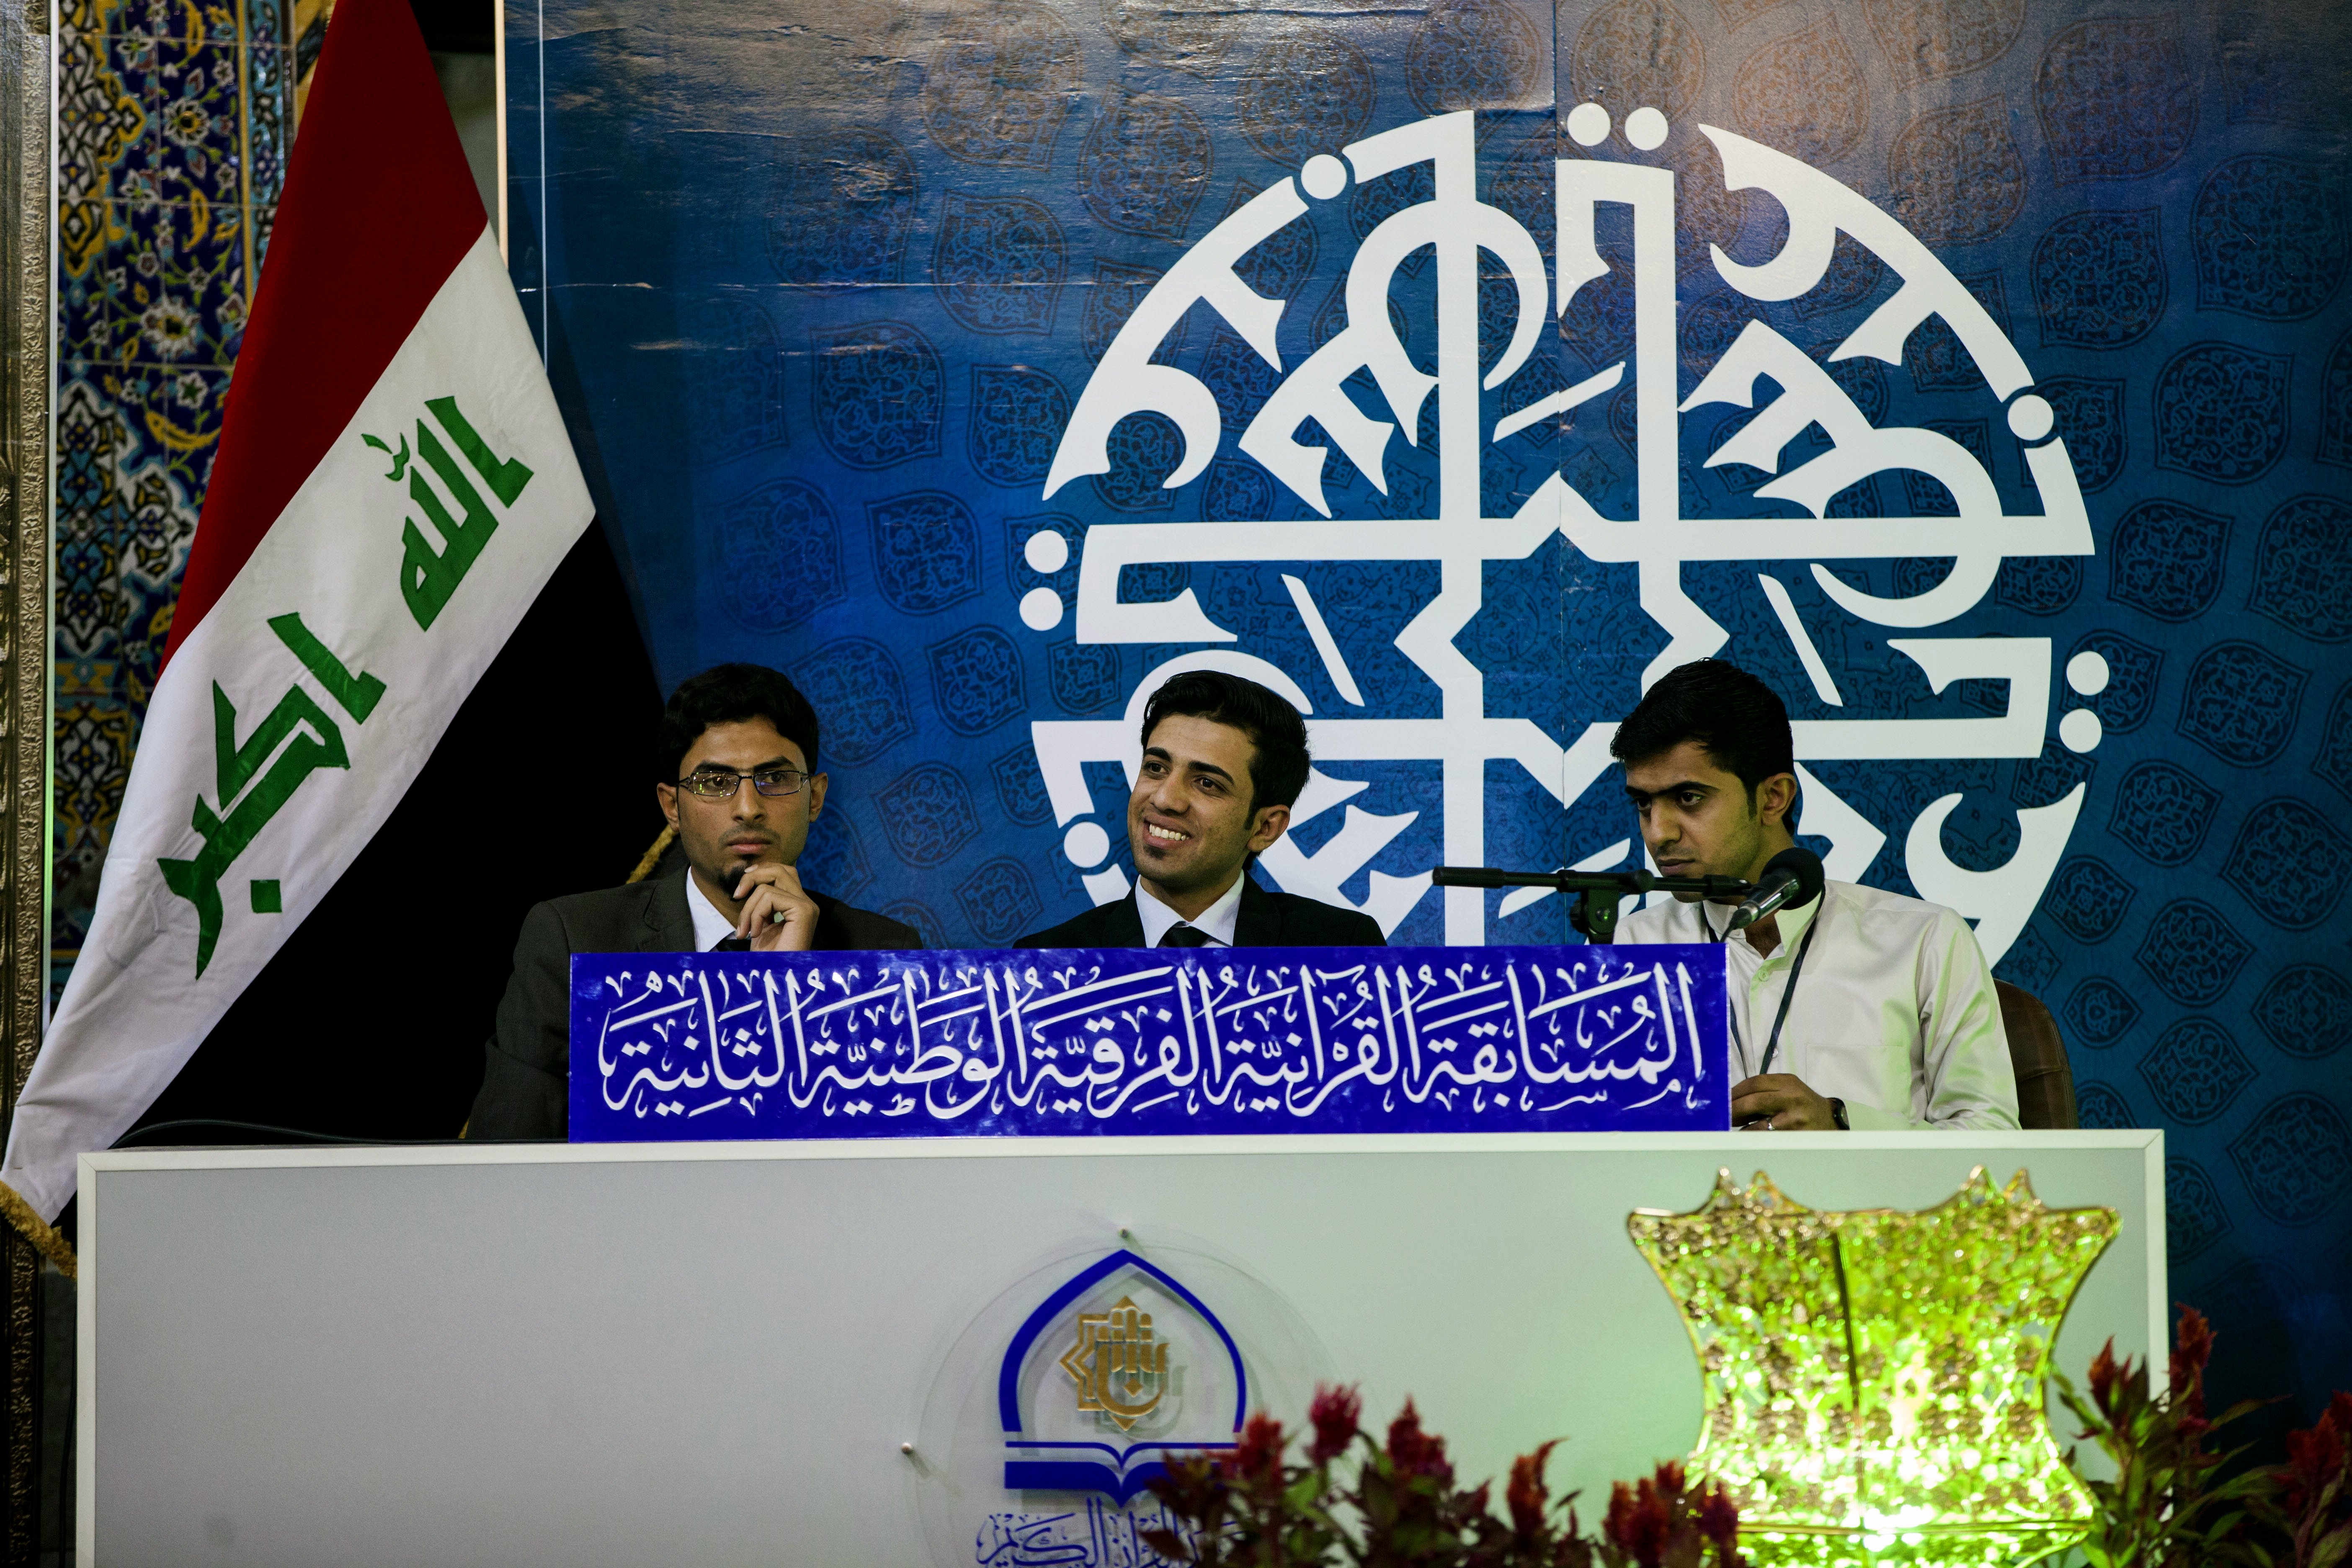 فريق ميسان يفوز على فريق ذي قار في انطلاق المسابقة القرآنية الفرقية الوطنية الثانية..